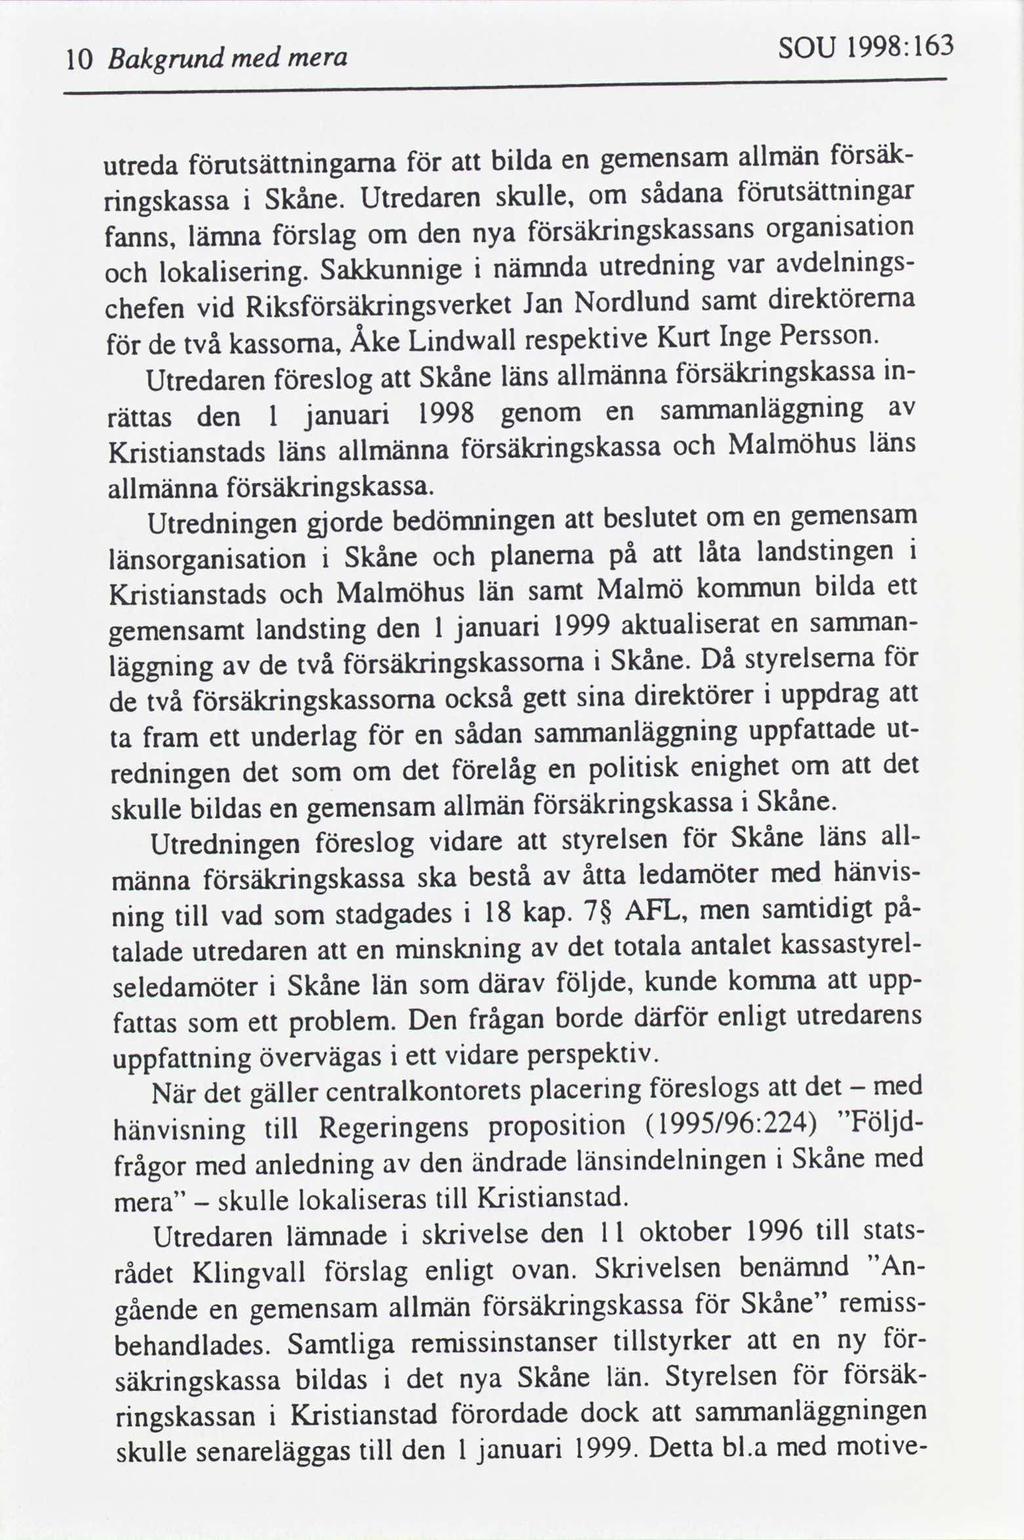 163 1998: SOU med Bakgrund 10 mera säkallmän blda utsättnngarna gemensam utreda en utsättnngar sådana skulle, Utredaren Skåne.